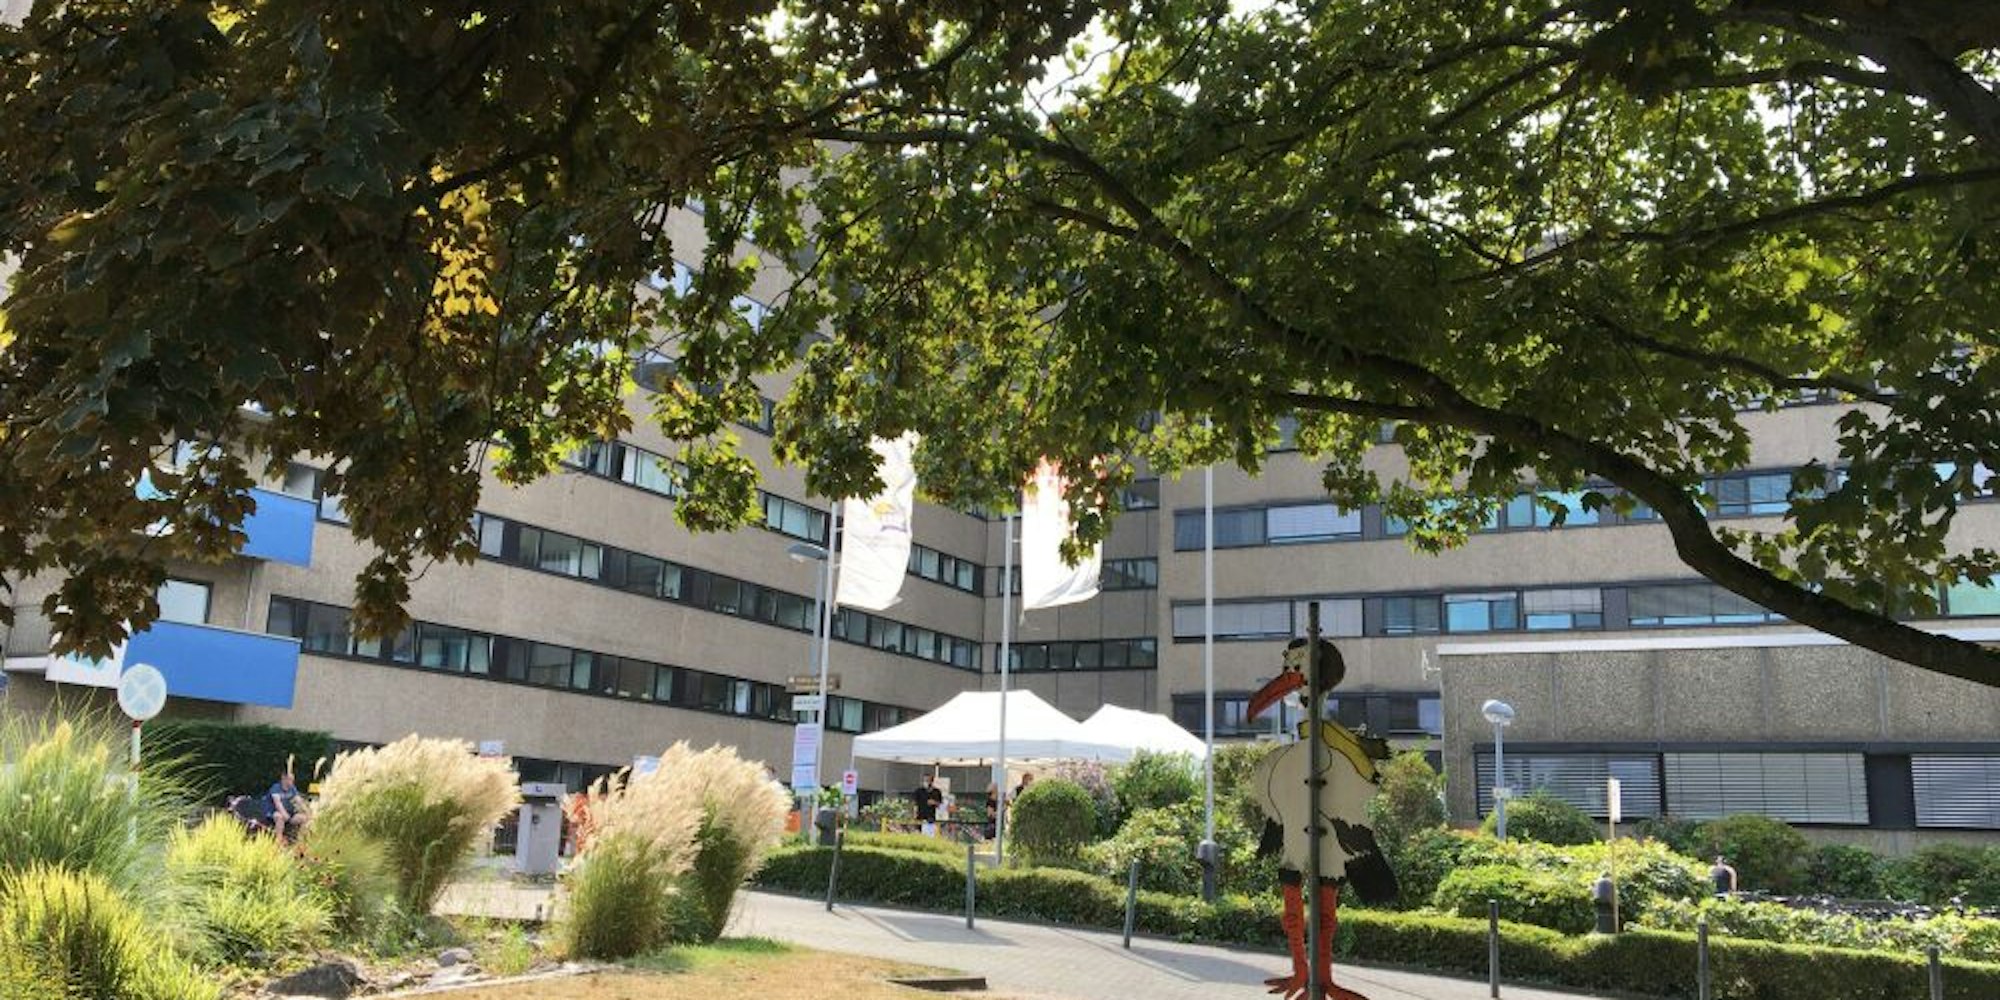 Strukturelle Veränderungspläne für Gremien im Krankenhaus Porz sorgen für Zwist mit dem Förder-Vereins-Vorstand.